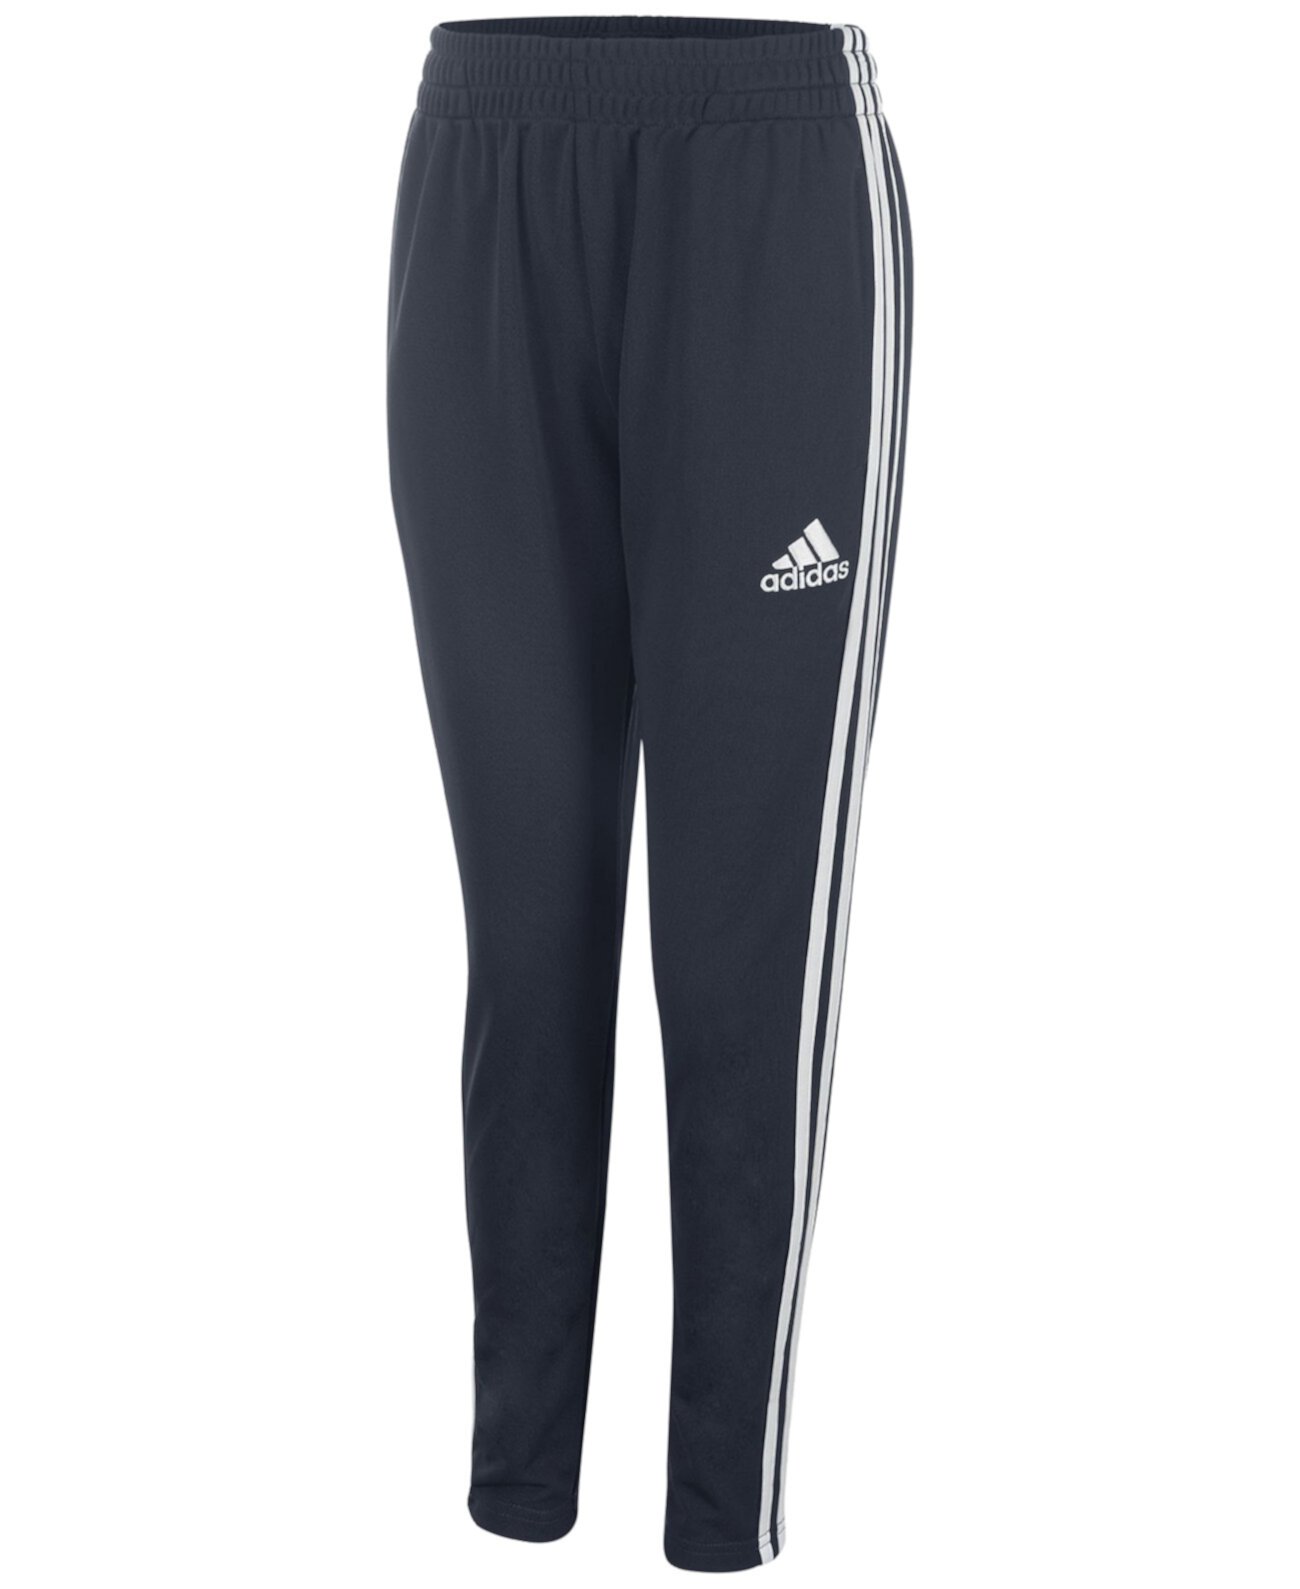 Спортивные штаны для больших мальчиков Adidas